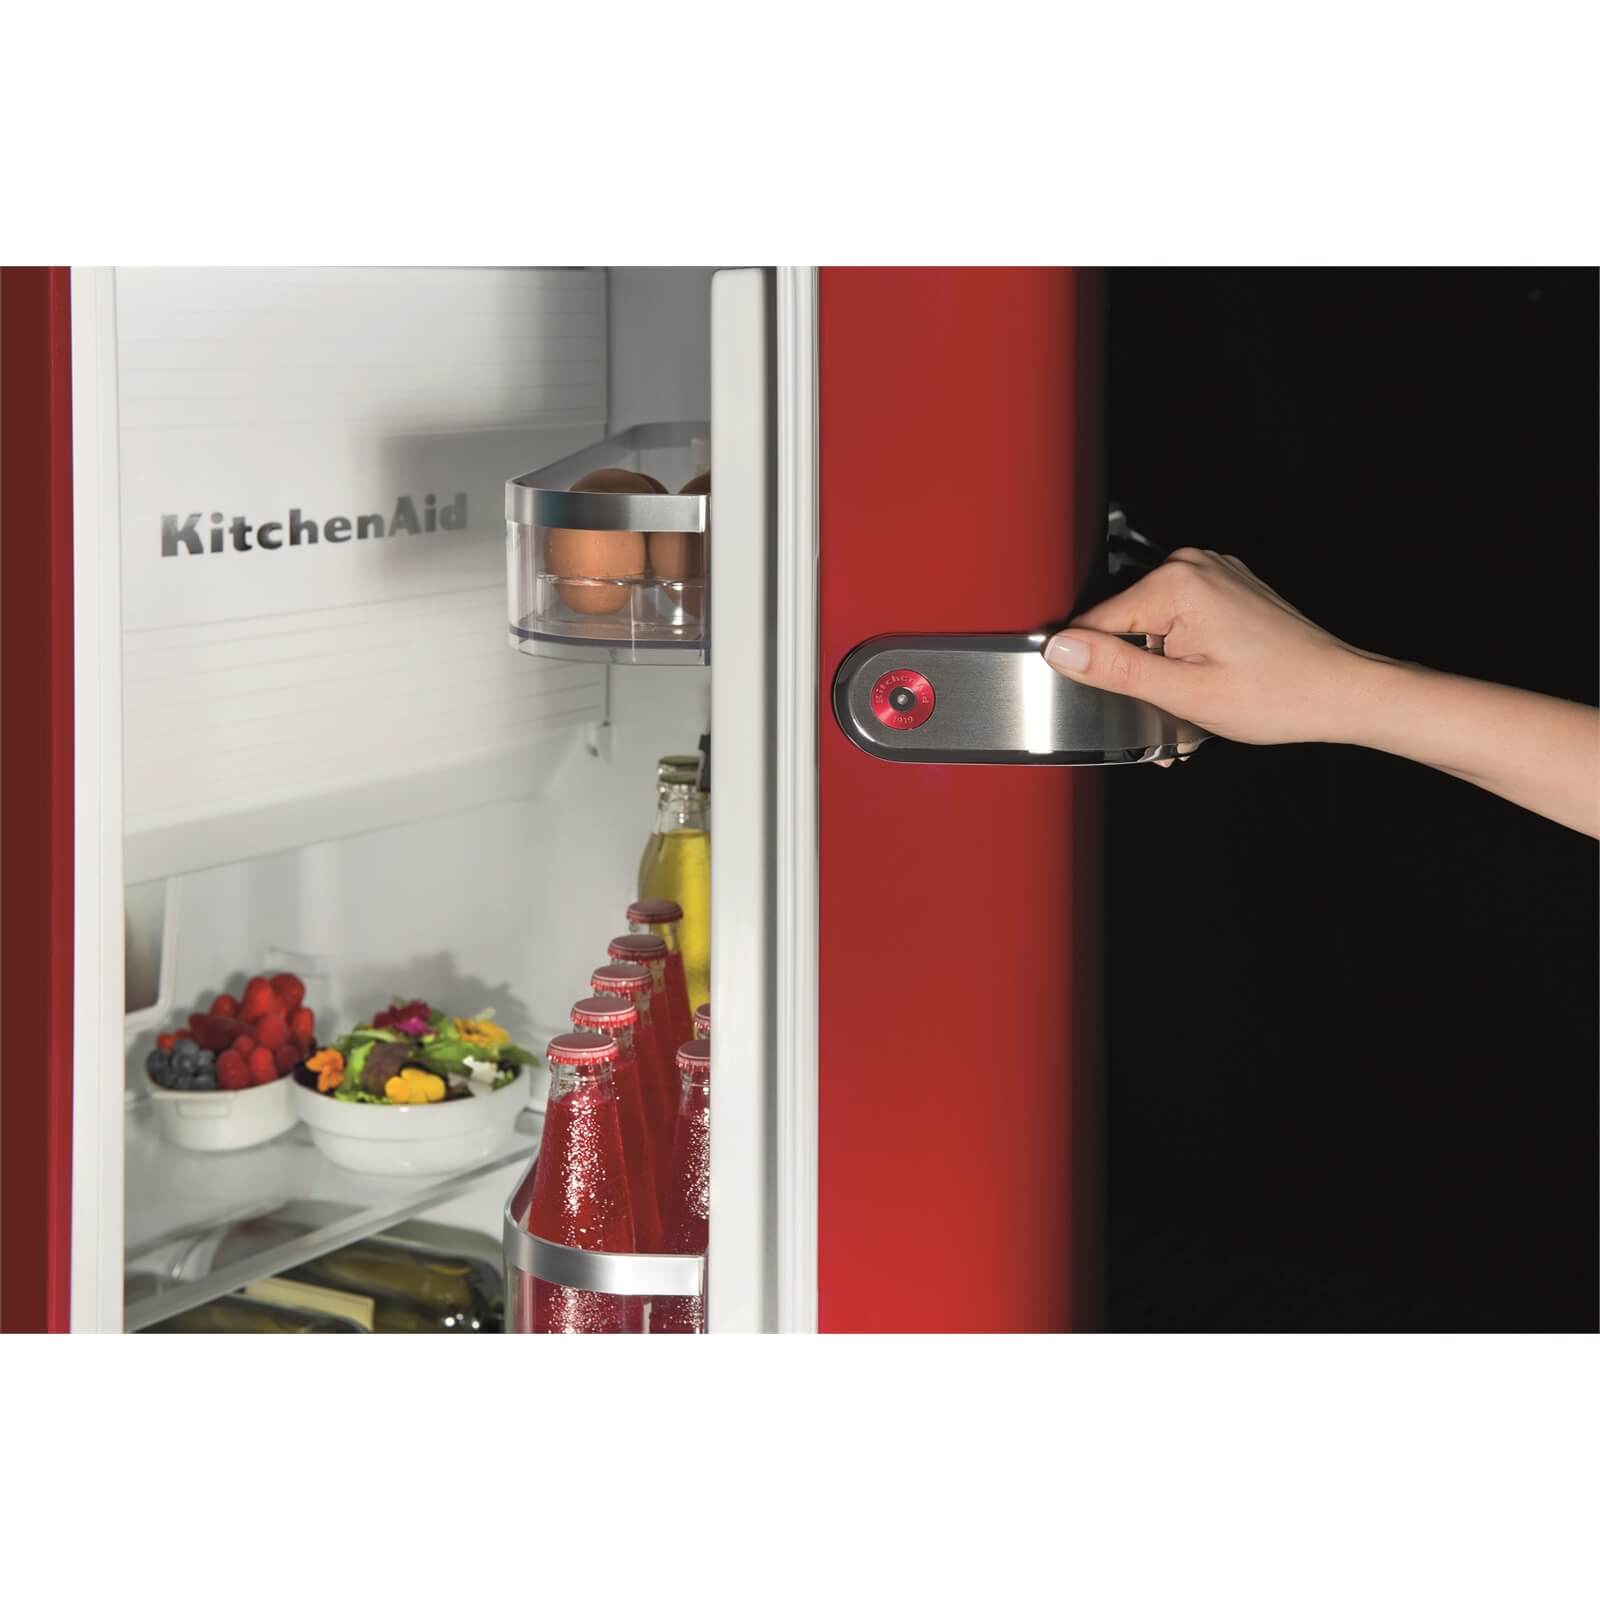 KitchenAid KCFME 60150L UK Fridge - Red